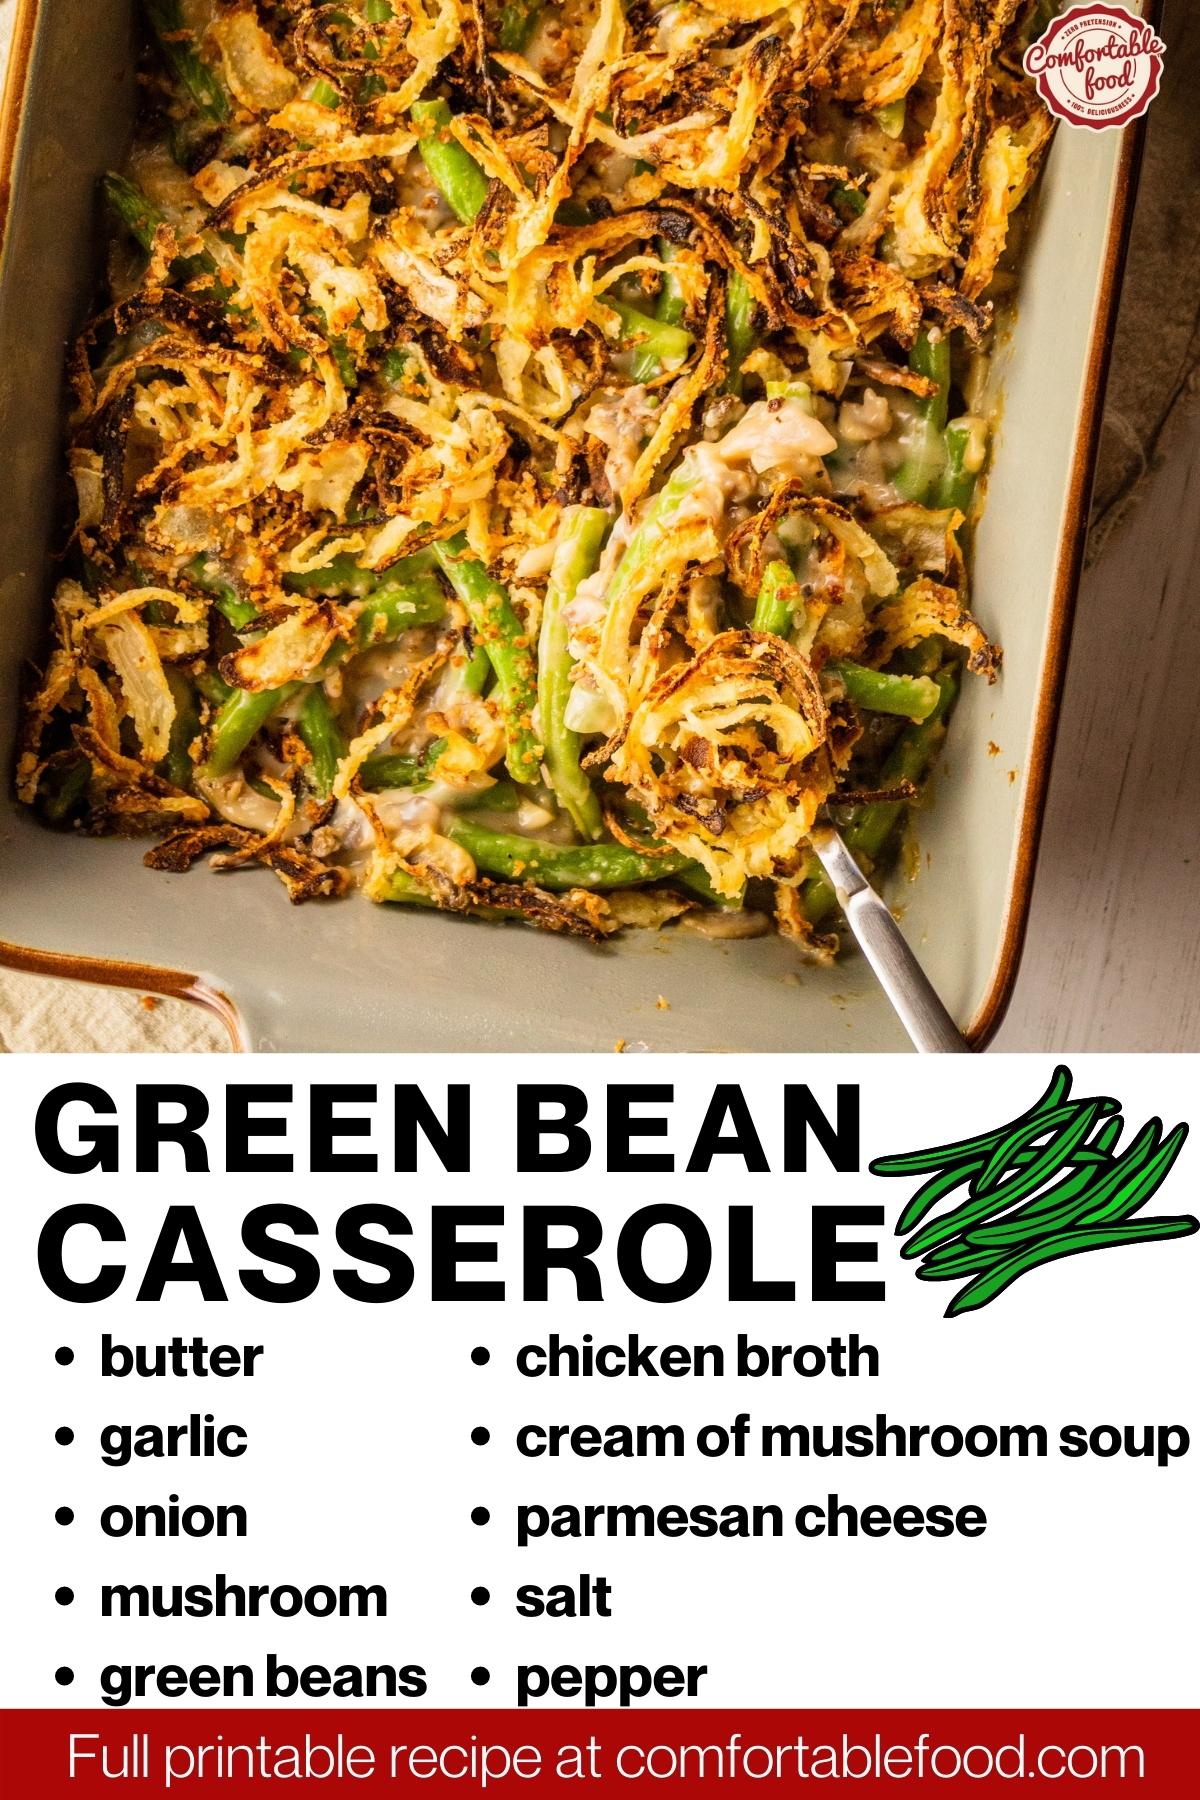 Green bean casserole socials